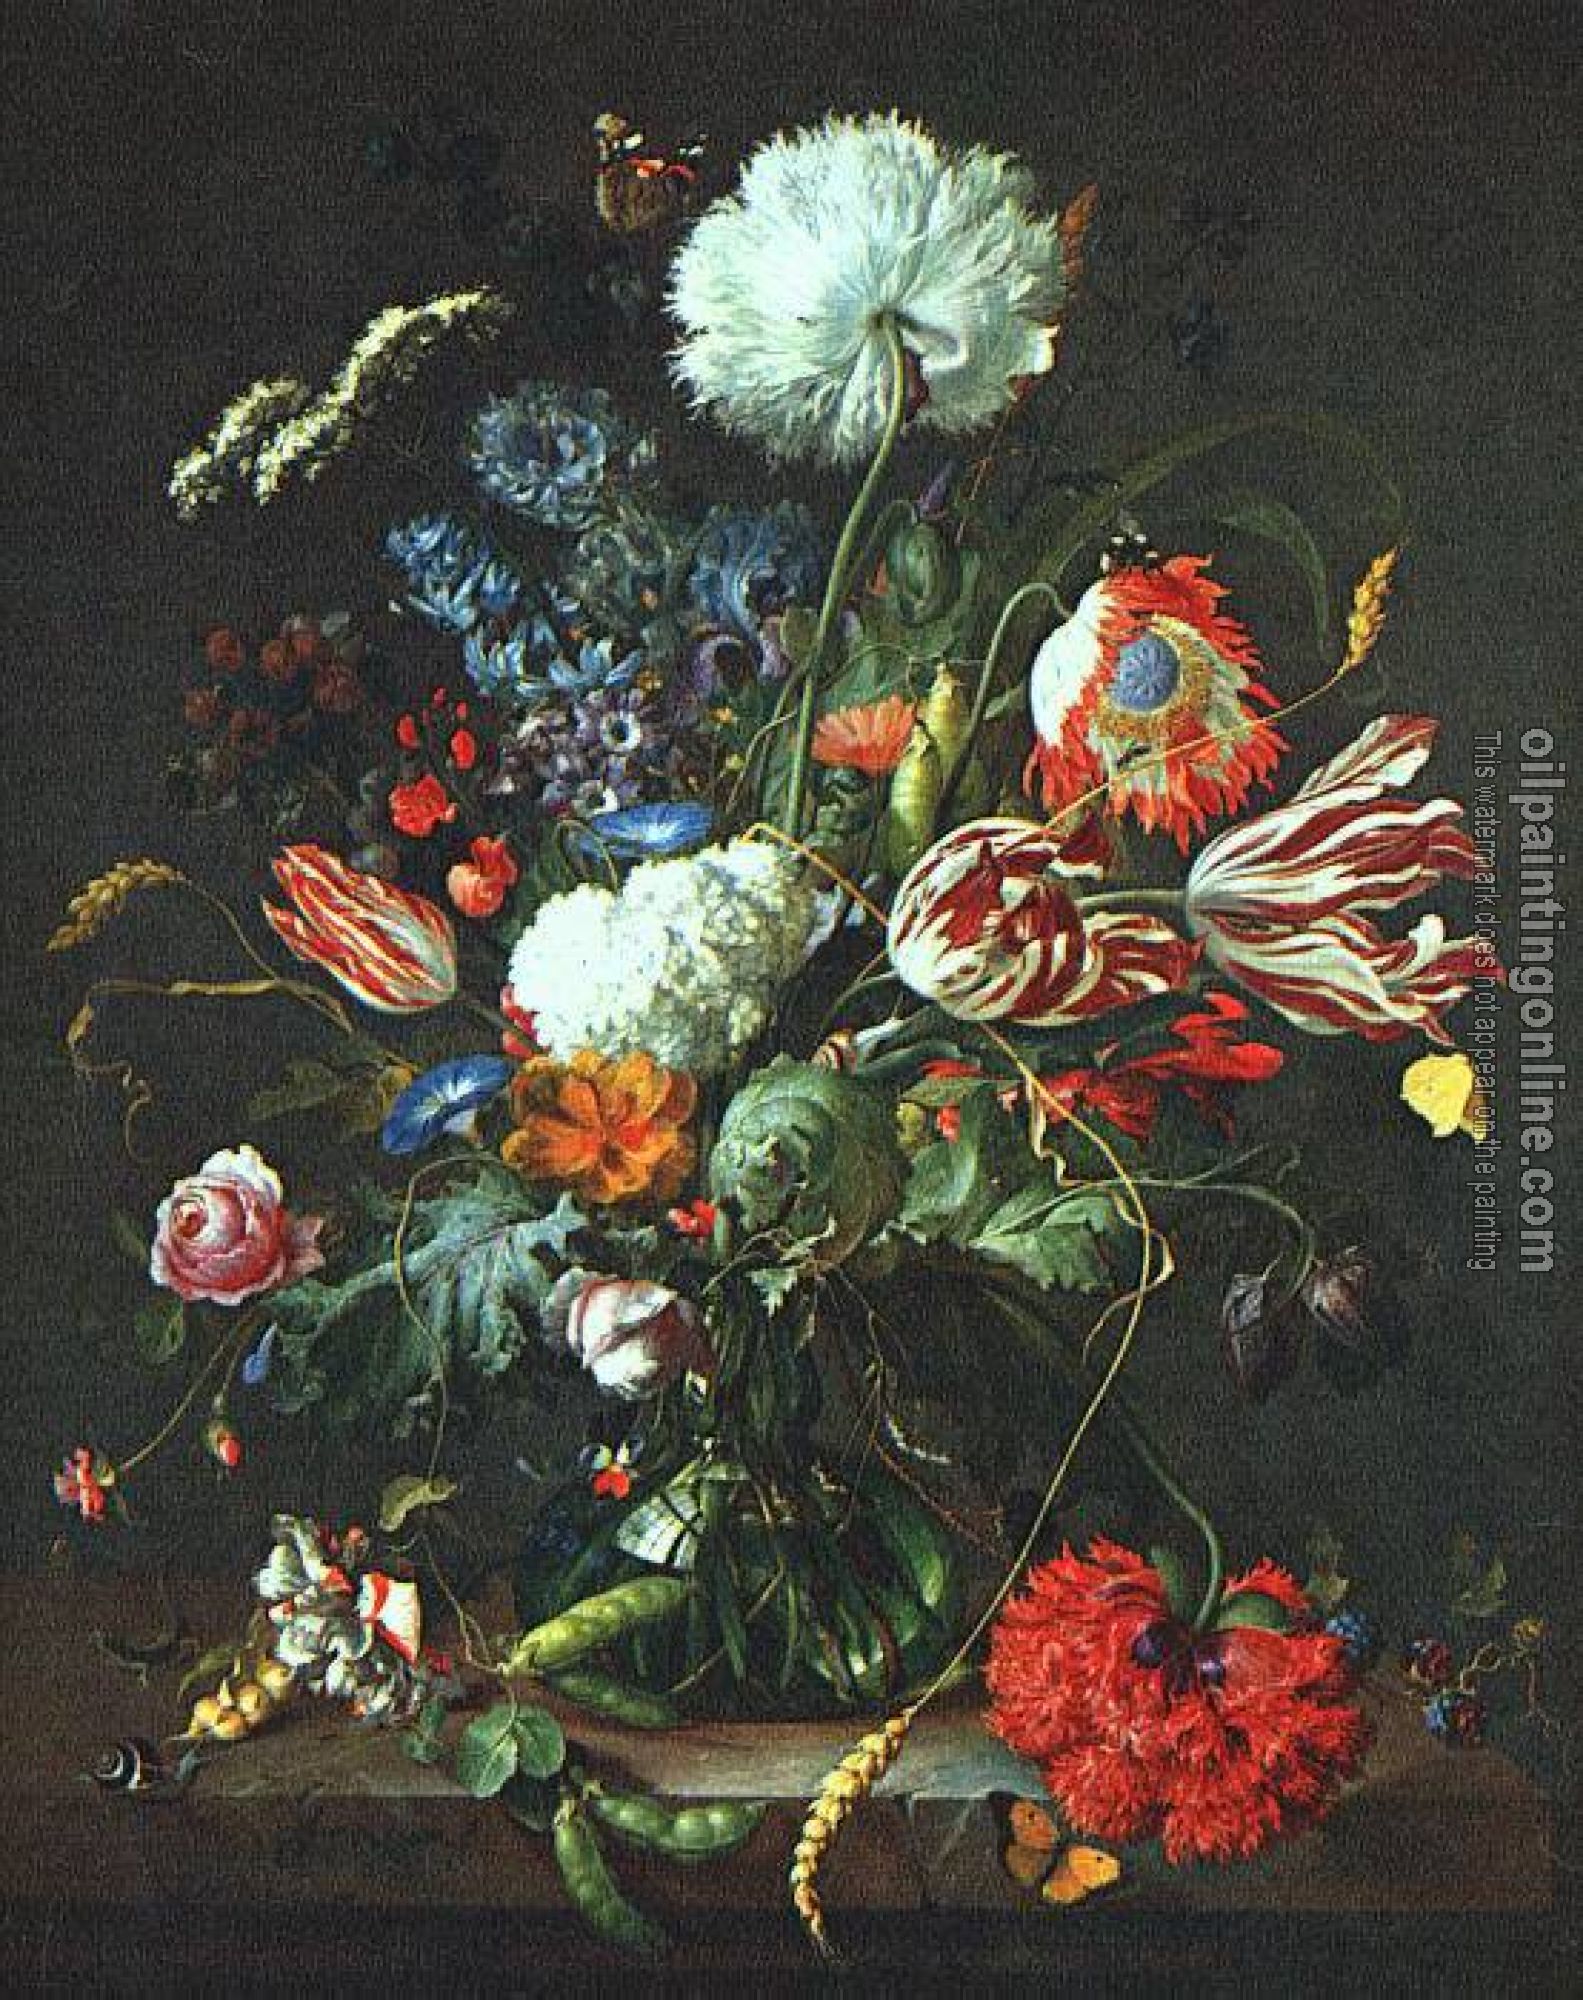 Heem, Jan Davidsz de - Vase of Flowers